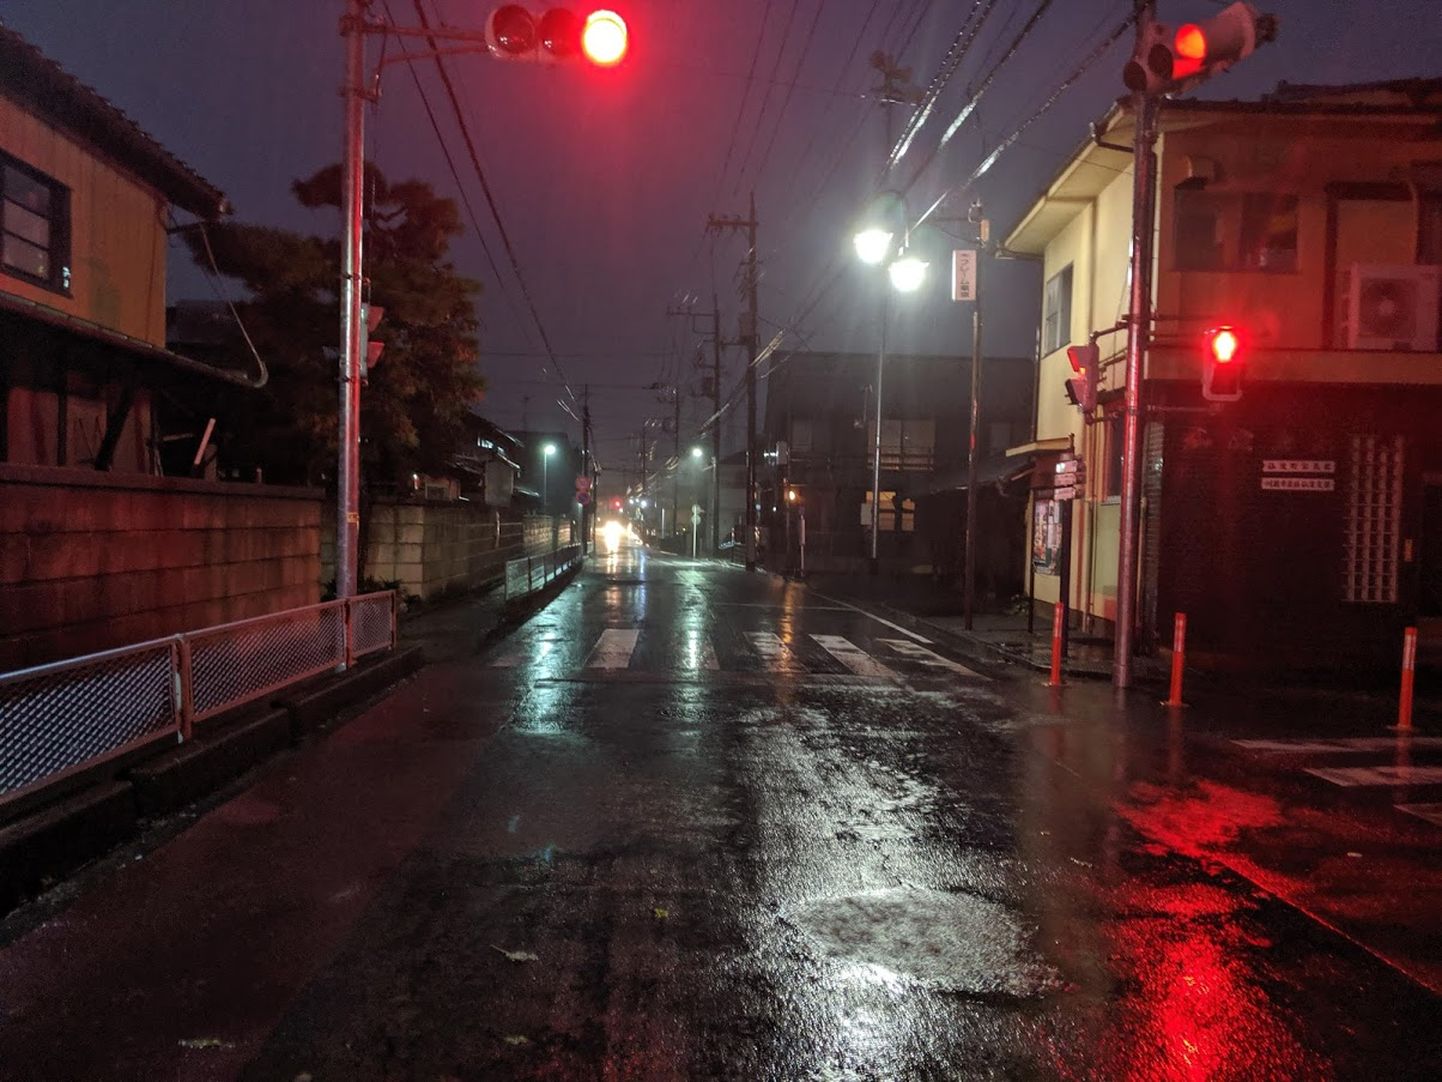 Kawagoe tänavad on mattunud taifuuni saabumise eel pimedusse. Foto on tehtud natukene enne kella viite päeval, mil tavaliselt on valge.